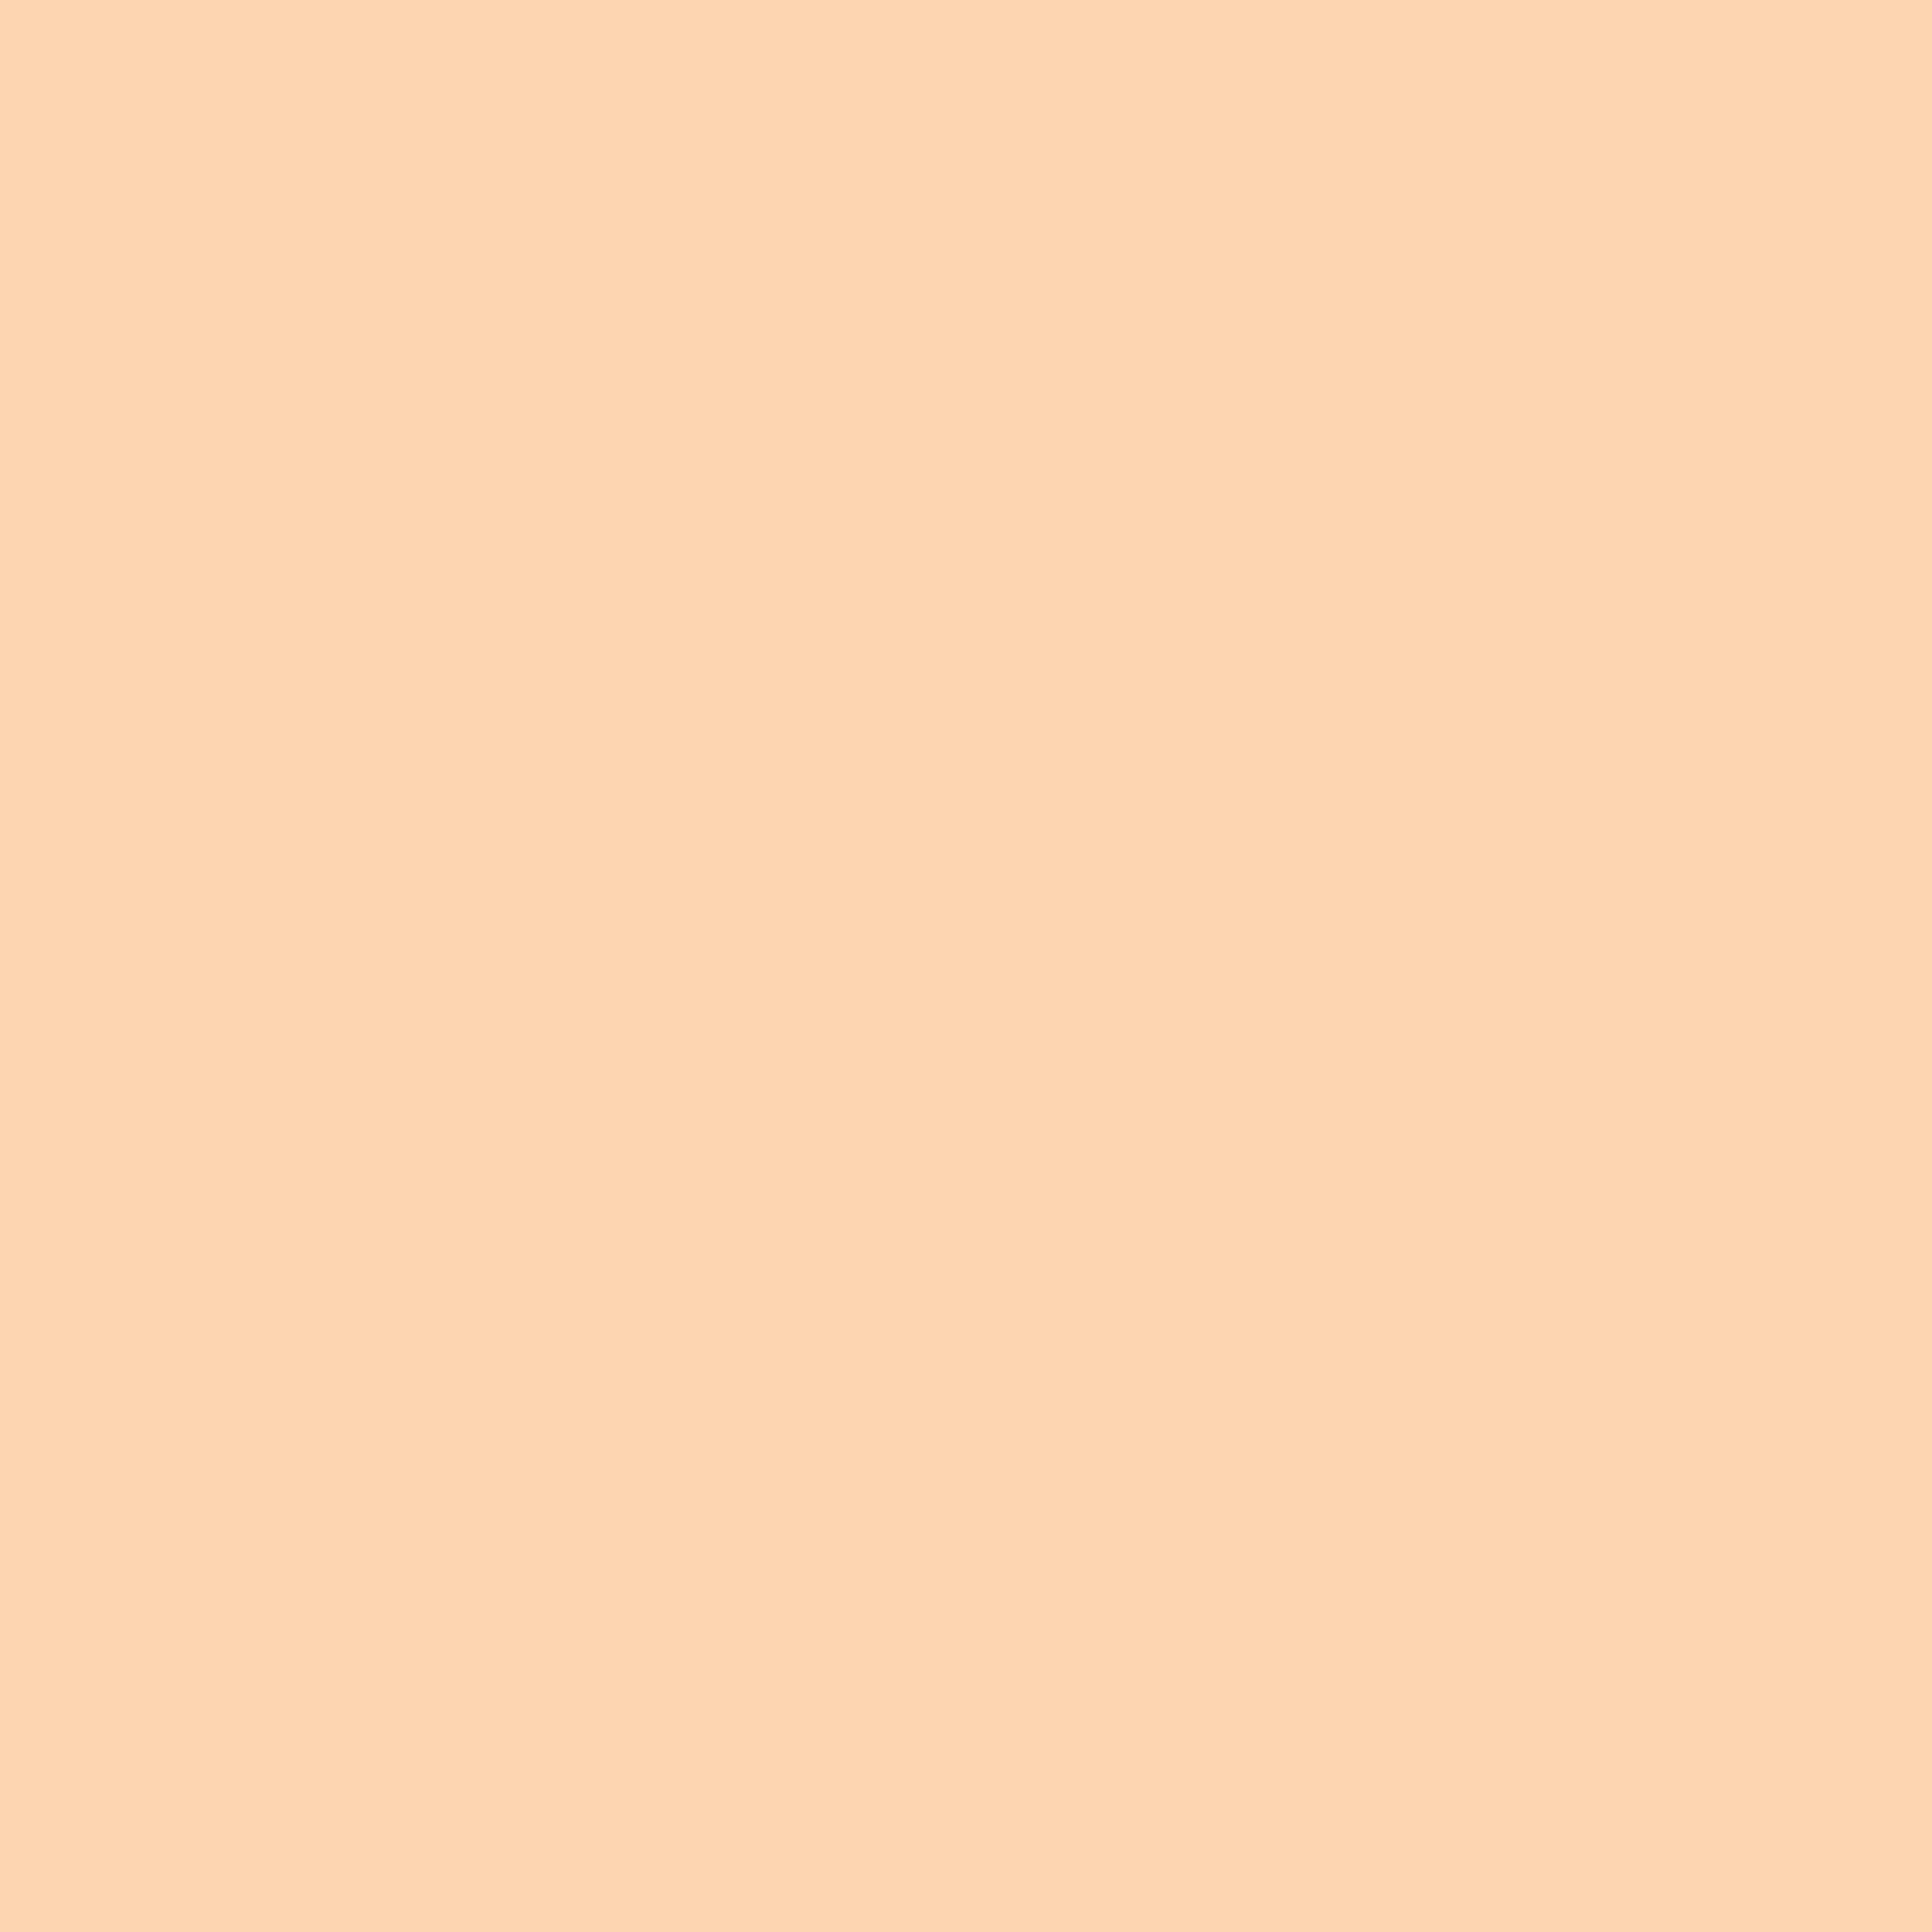 2732x2732 Feldspar Solid Color Background